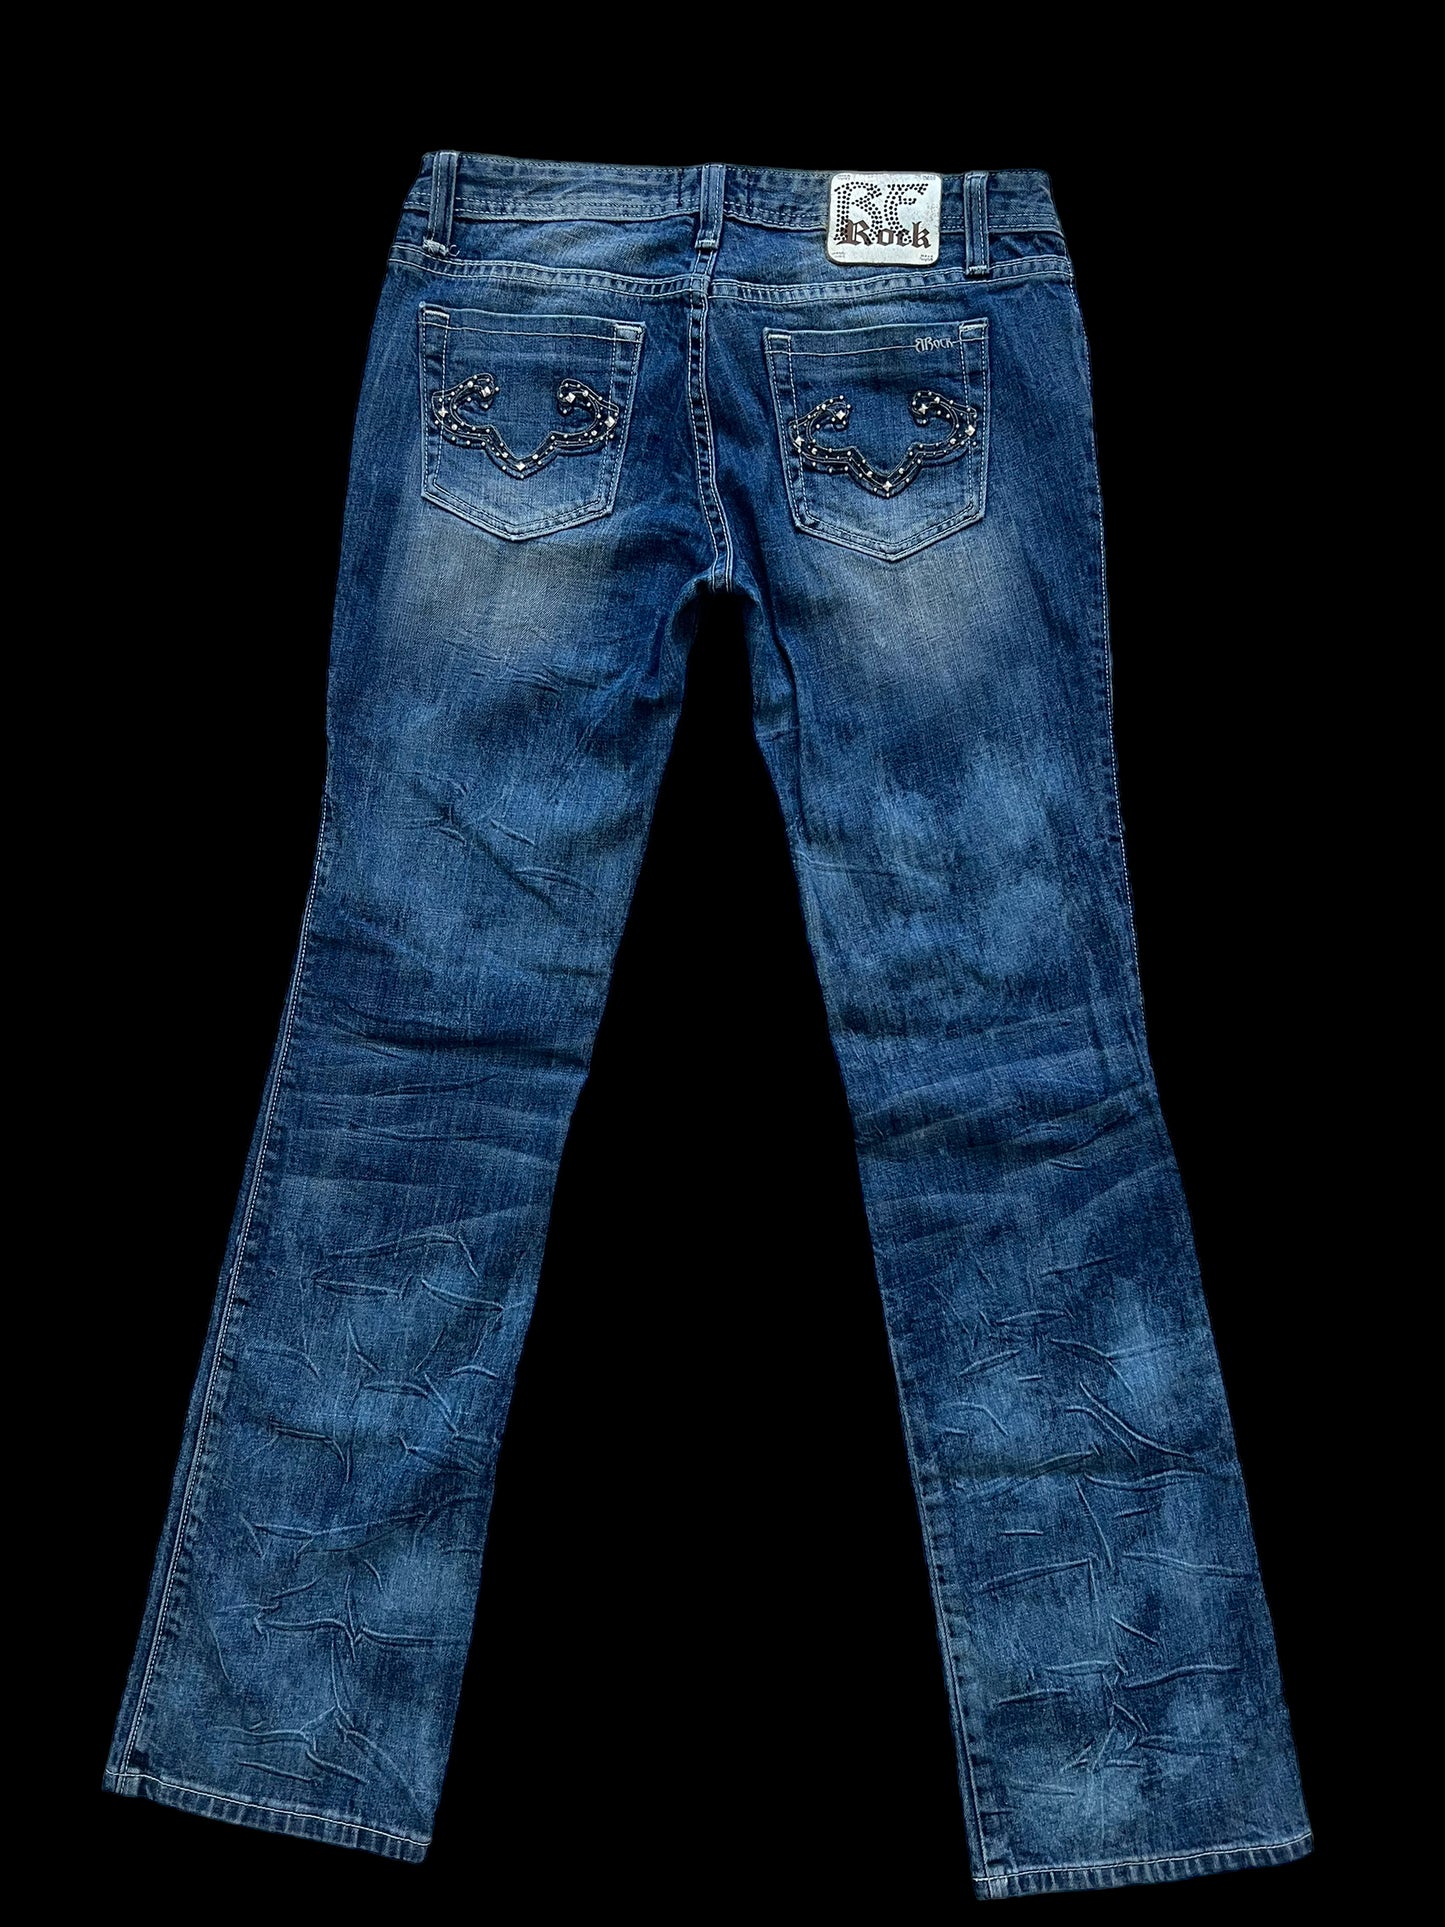 Rerock jeans